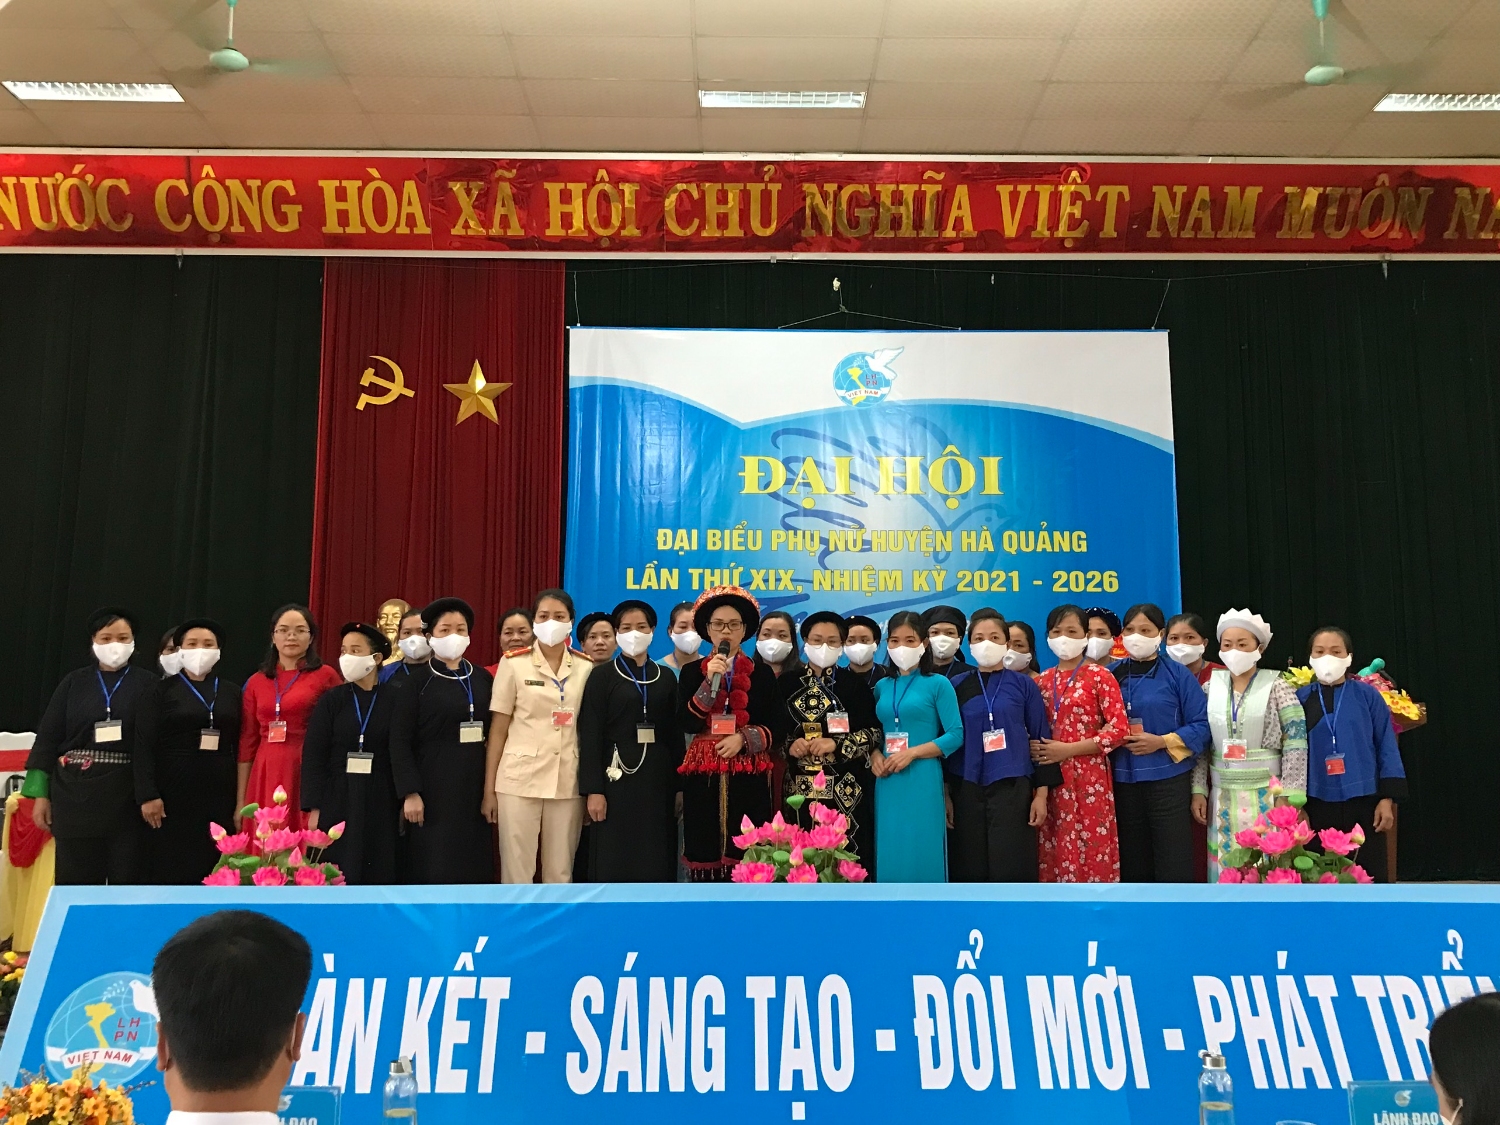 BCH Hội LHPN huyện Hà Quảng khóa XIX, nhiệm kỳ 2021 - 2026